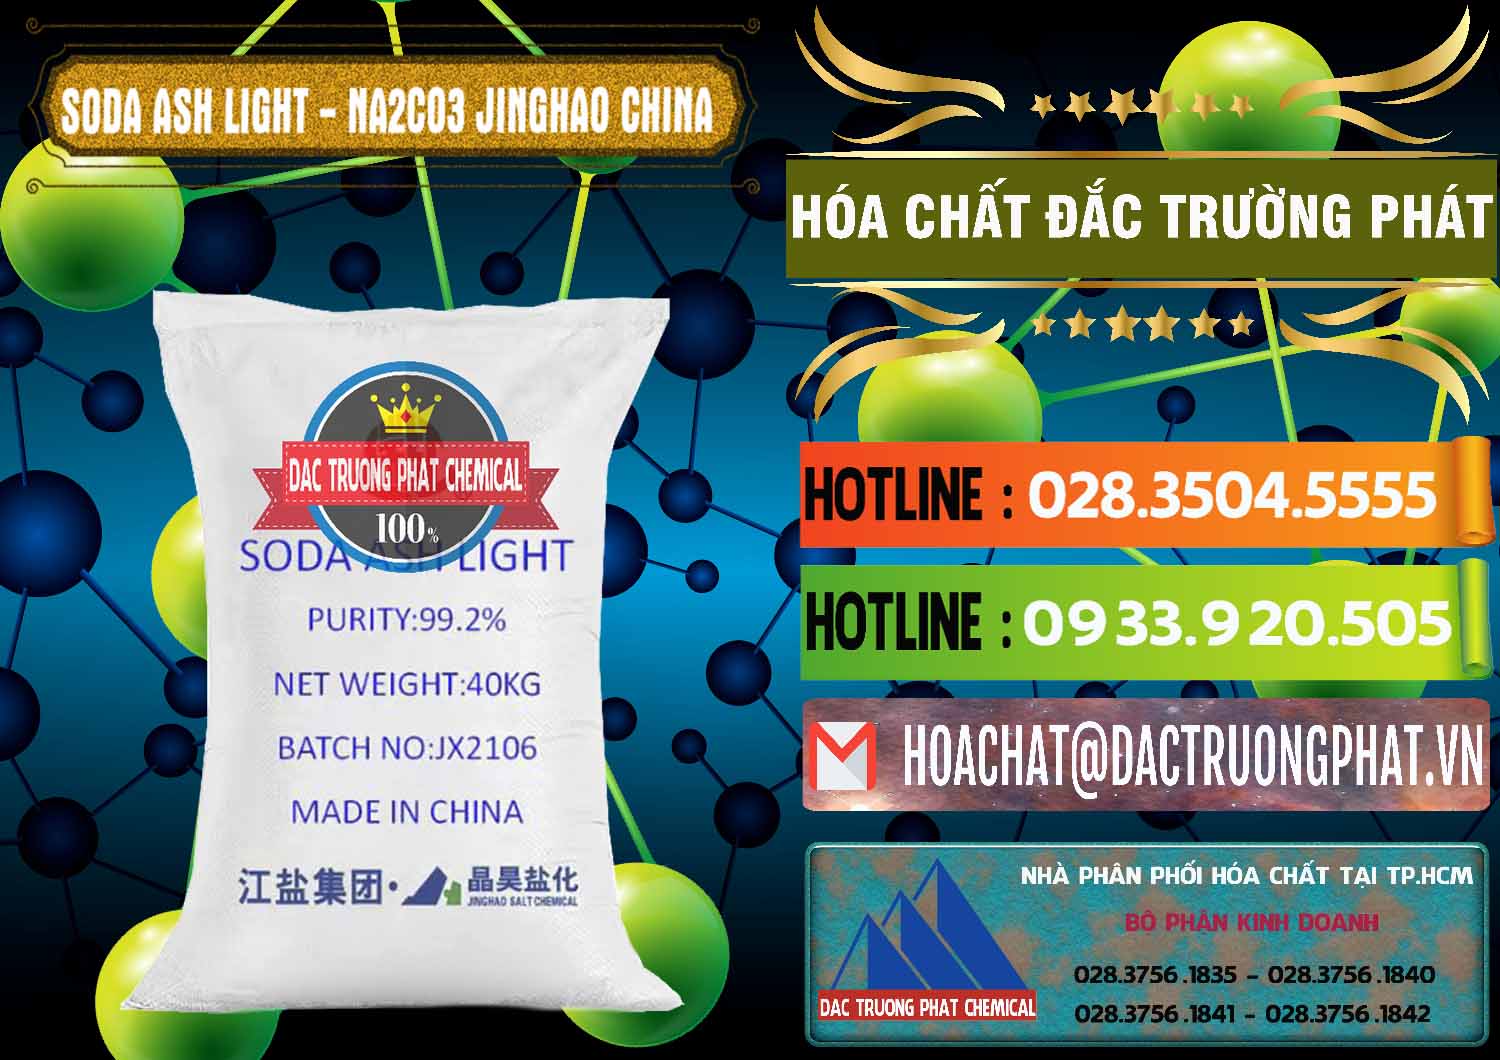 Cung cấp và bán Soda Ash Light - NA2CO3 Jinghao Trung Quốc China - 0339 - Nơi chuyên nhập khẩu và phân phối hóa chất tại TP.HCM - cungcaphoachat.com.vn